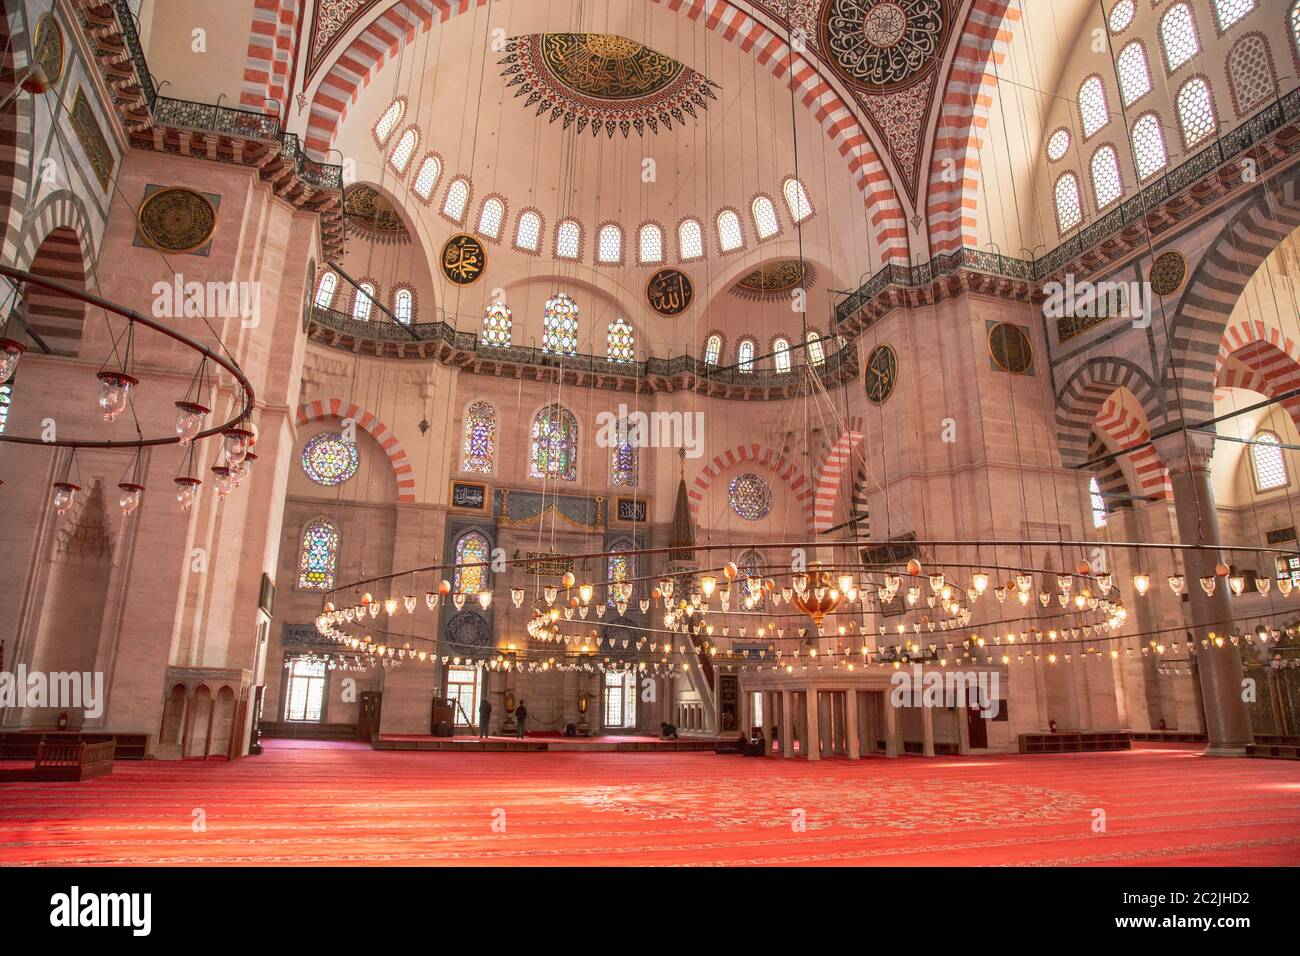 Estambul, Turquía, 25 de marzo de 2019: Vista interior de la Mezquita de Suleymaniye en Estambul, Turquía. La Mezquita de Suleymaniye es una mezquita construida por M. Foto de stock